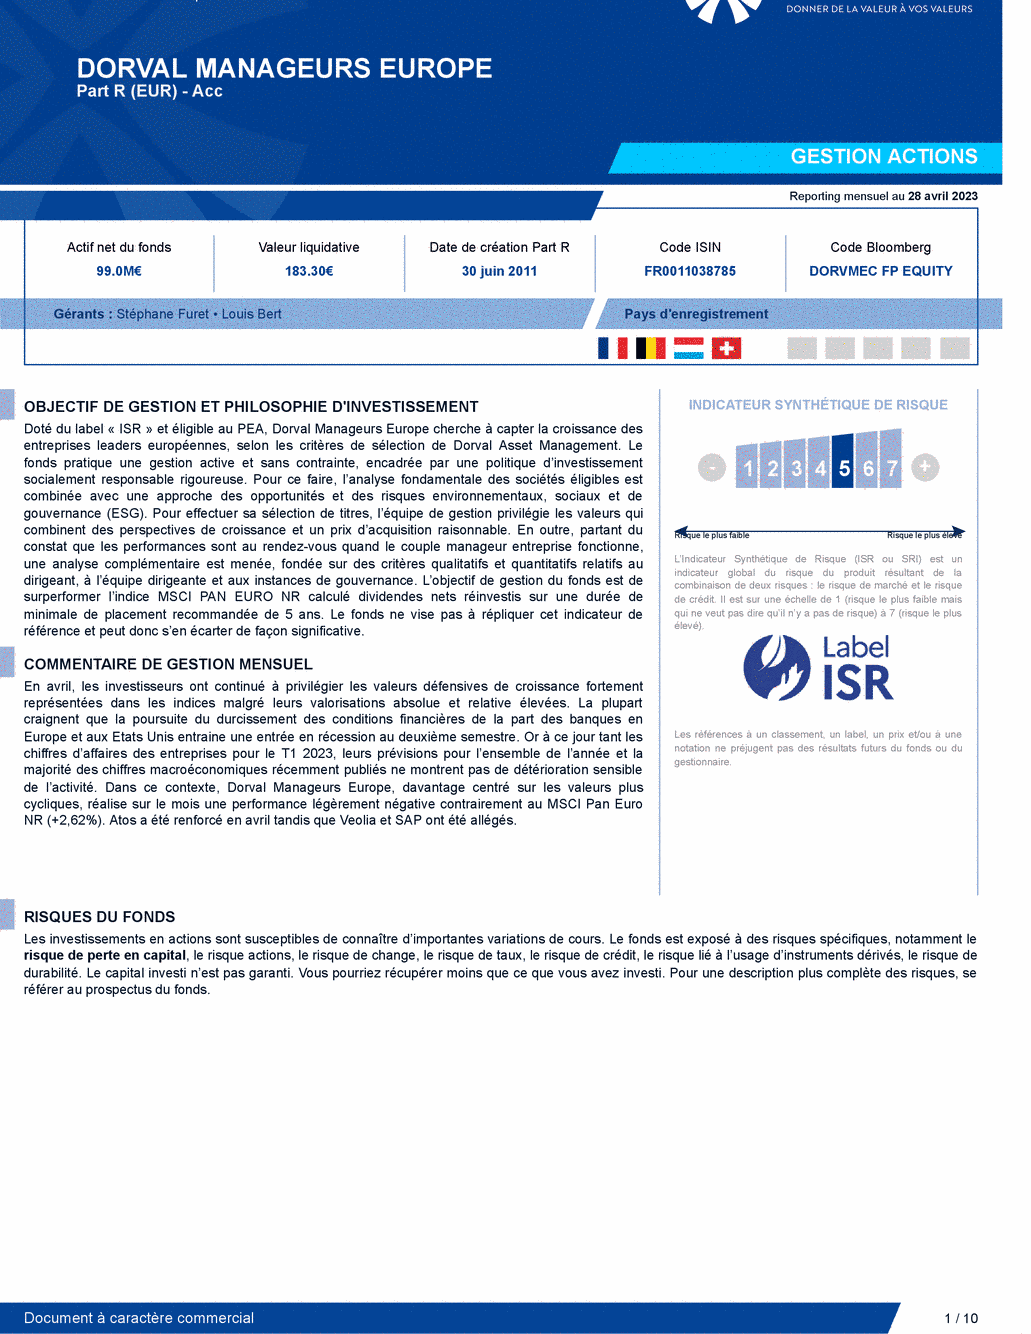 Reporting DORVAL MANAGEURS EUROPE - 28/04/2023 - Français